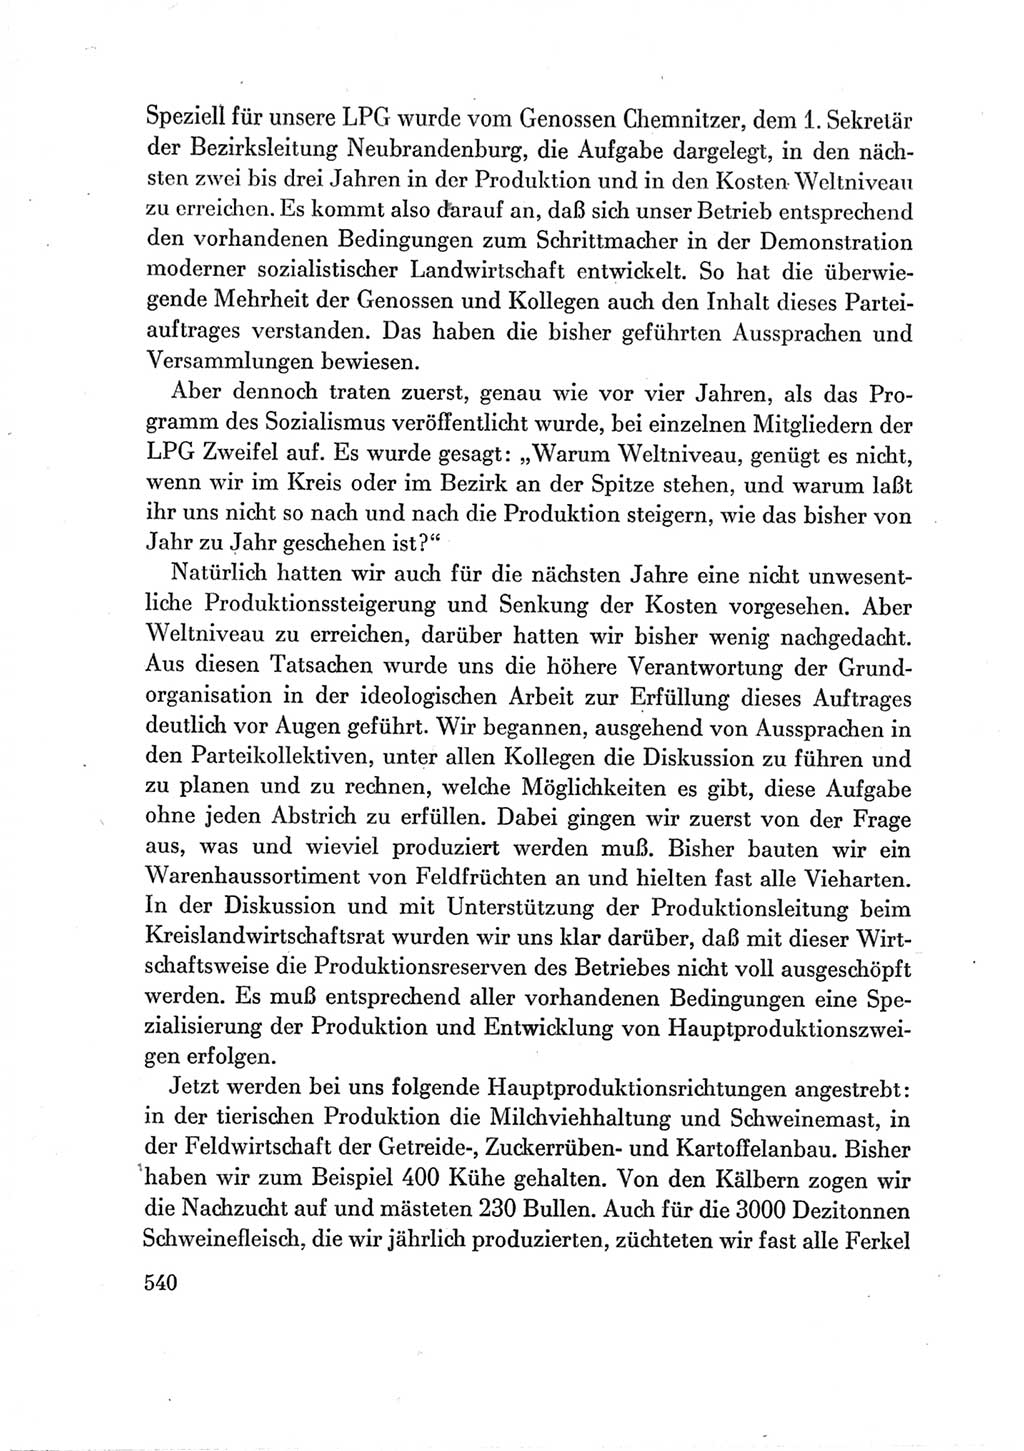 Protokoll der Verhandlungen des Ⅶ. Parteitages der Sozialistischen Einheitspartei Deutschlands (SED) [Deutsche Demokratische Republik (DDR)] 1967, Band Ⅲ, Seite 540 (Prot. Verh. Ⅶ. PT SED DDR 1967, Bd. Ⅲ, S. 540)